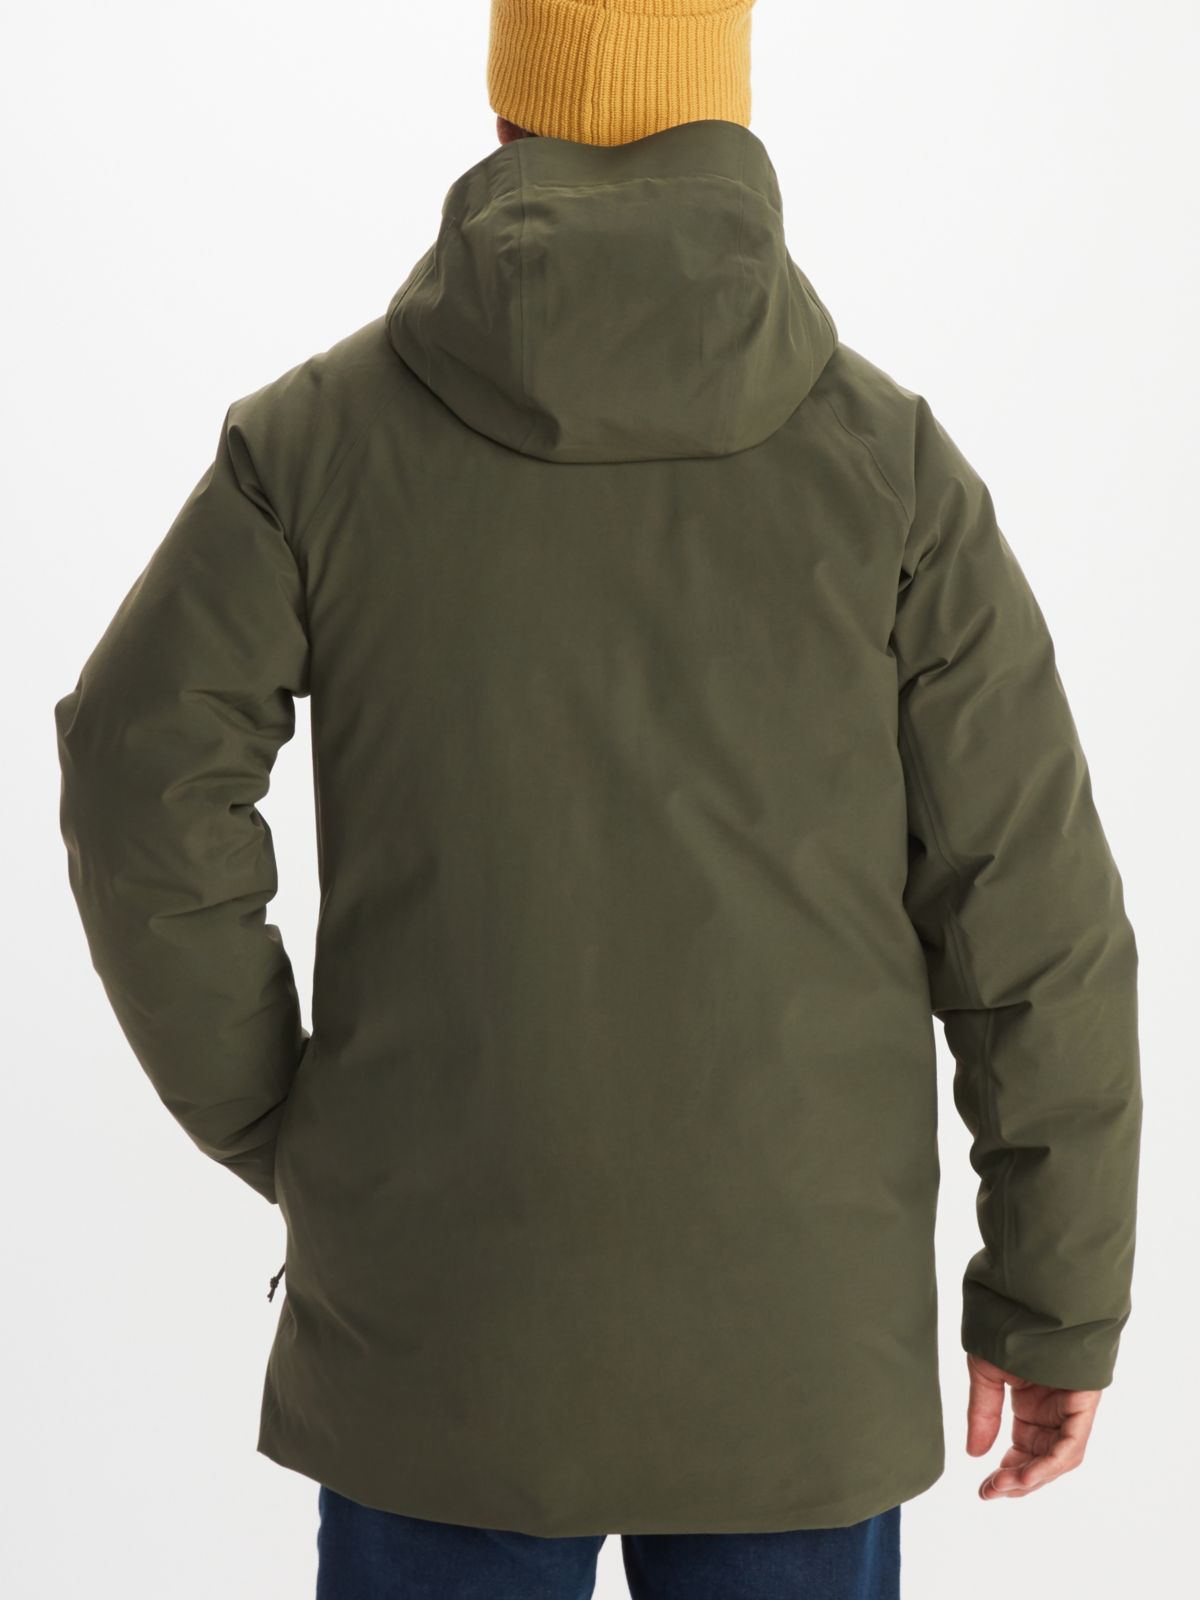 Model wearing Marmot men's hooded jacket in green